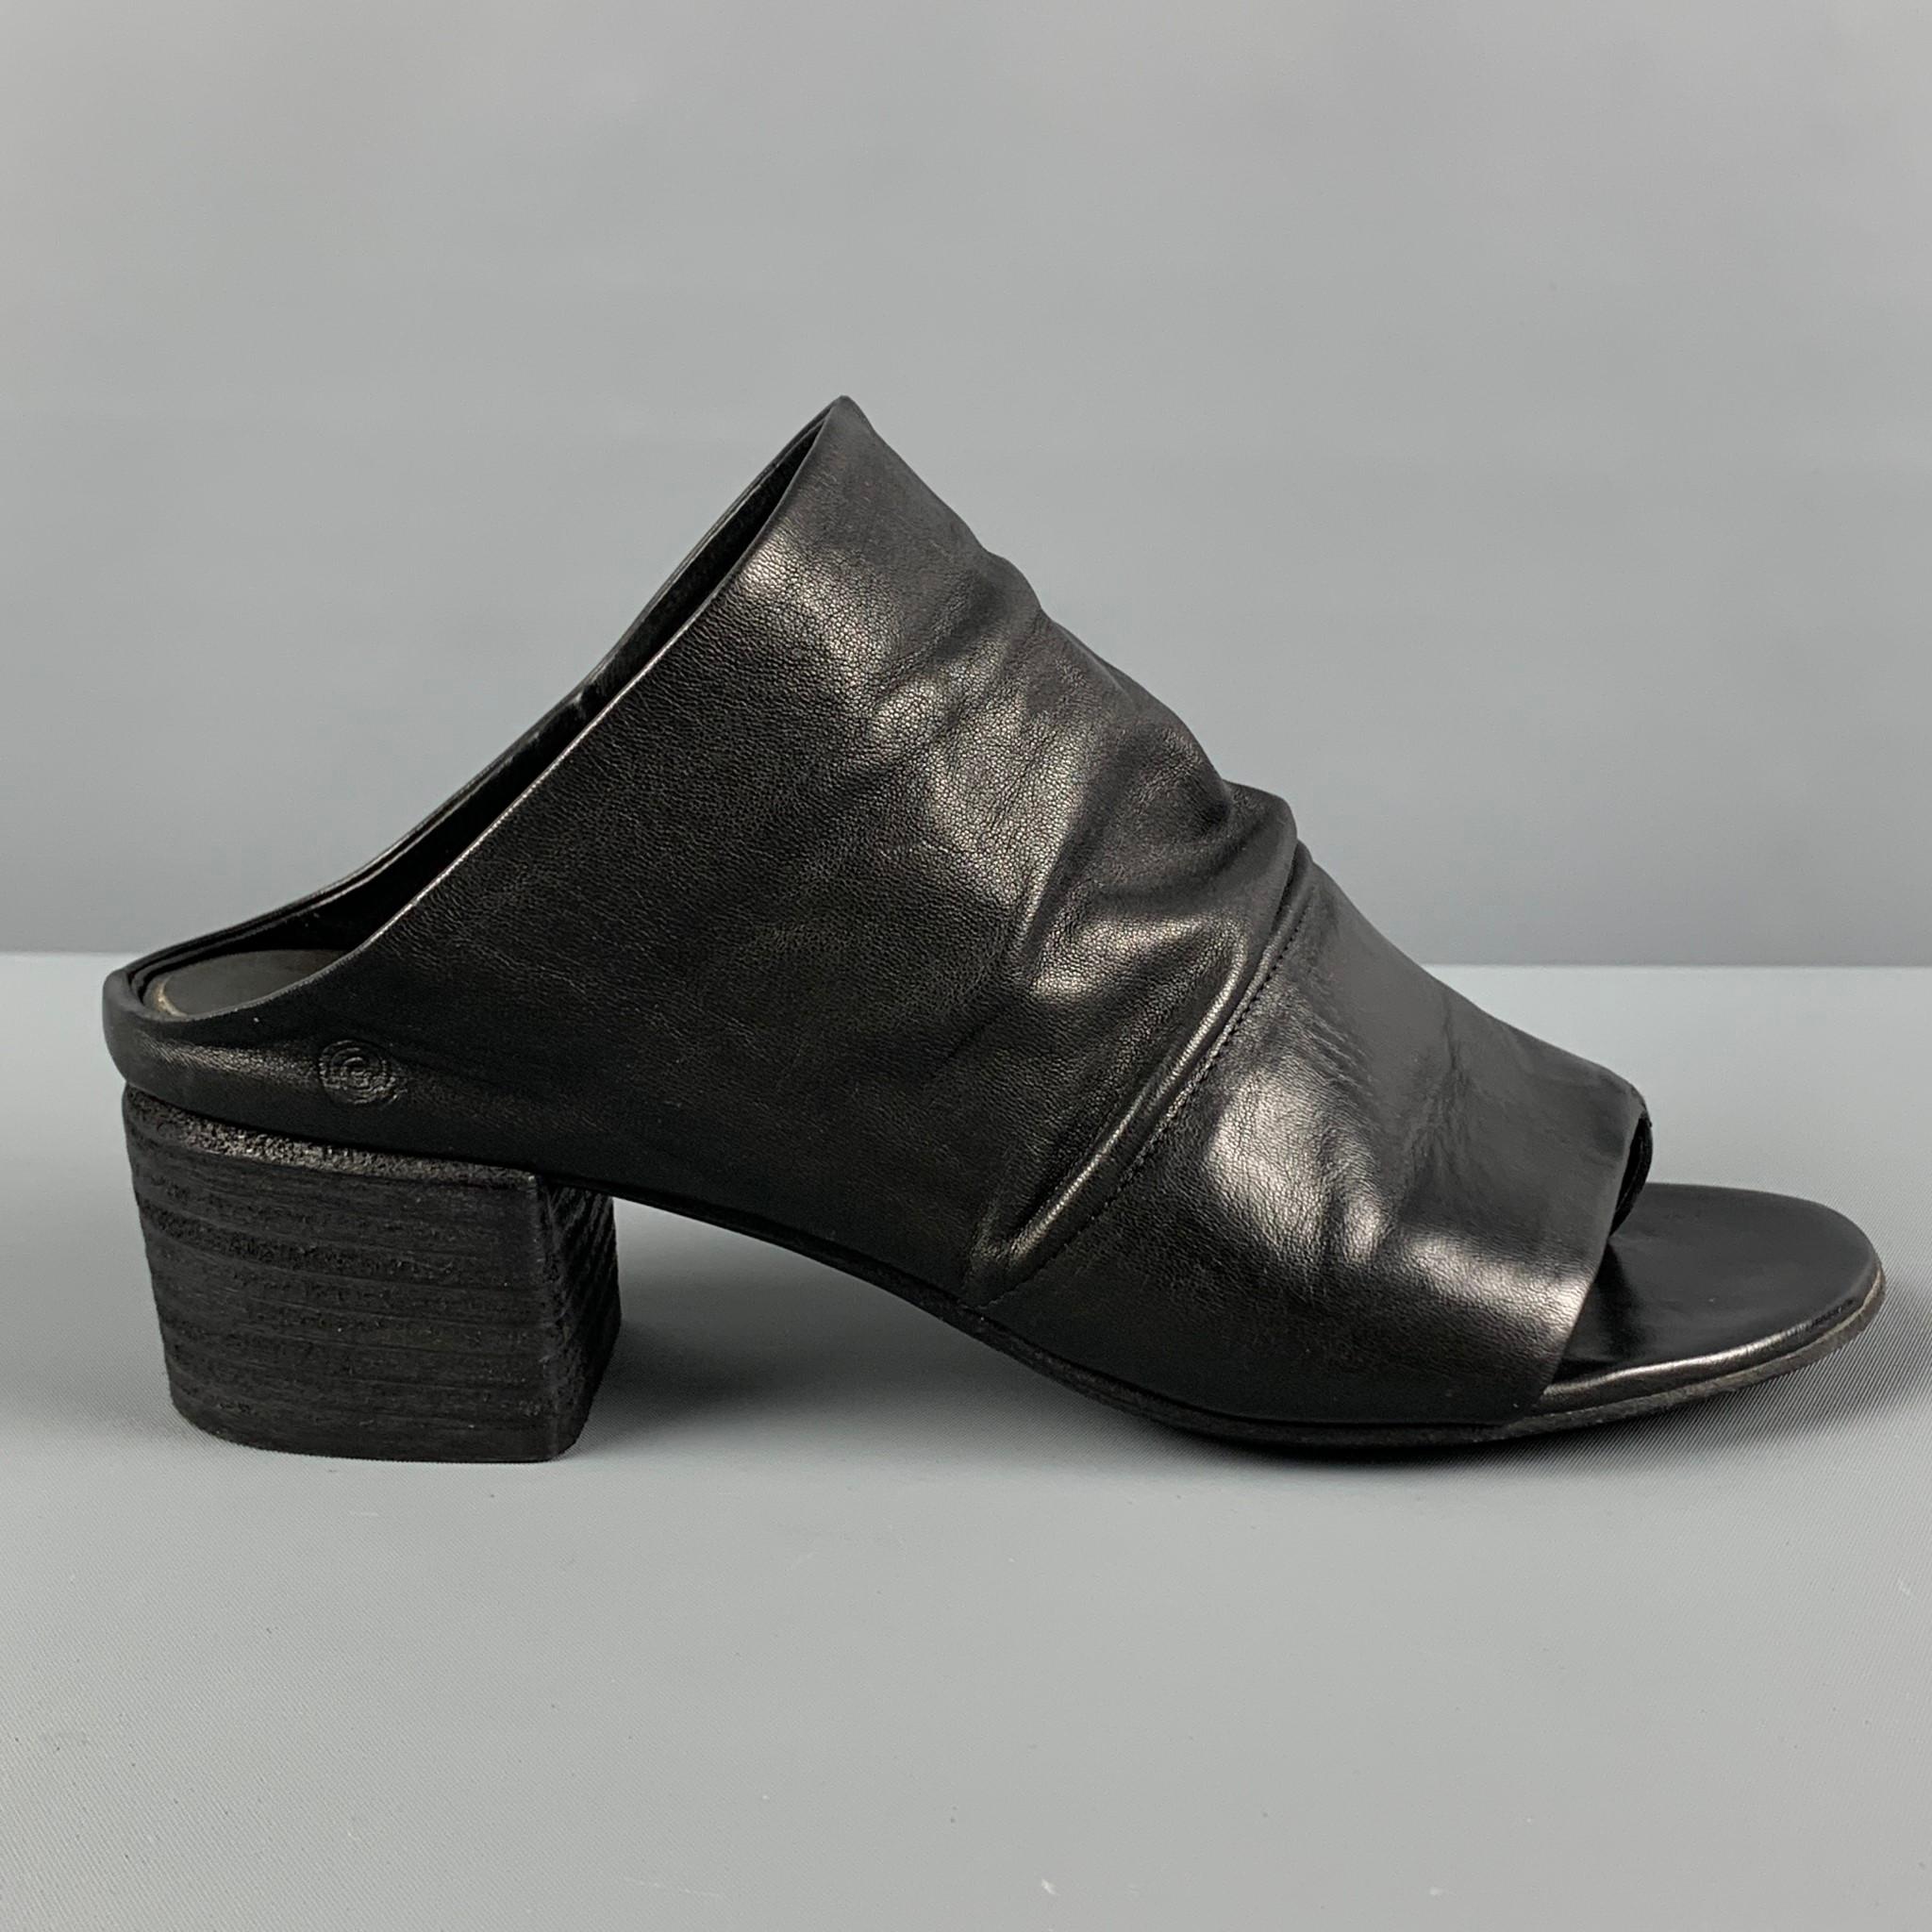 MARSELL Size 7 Black Leather Peep Toe Sandals